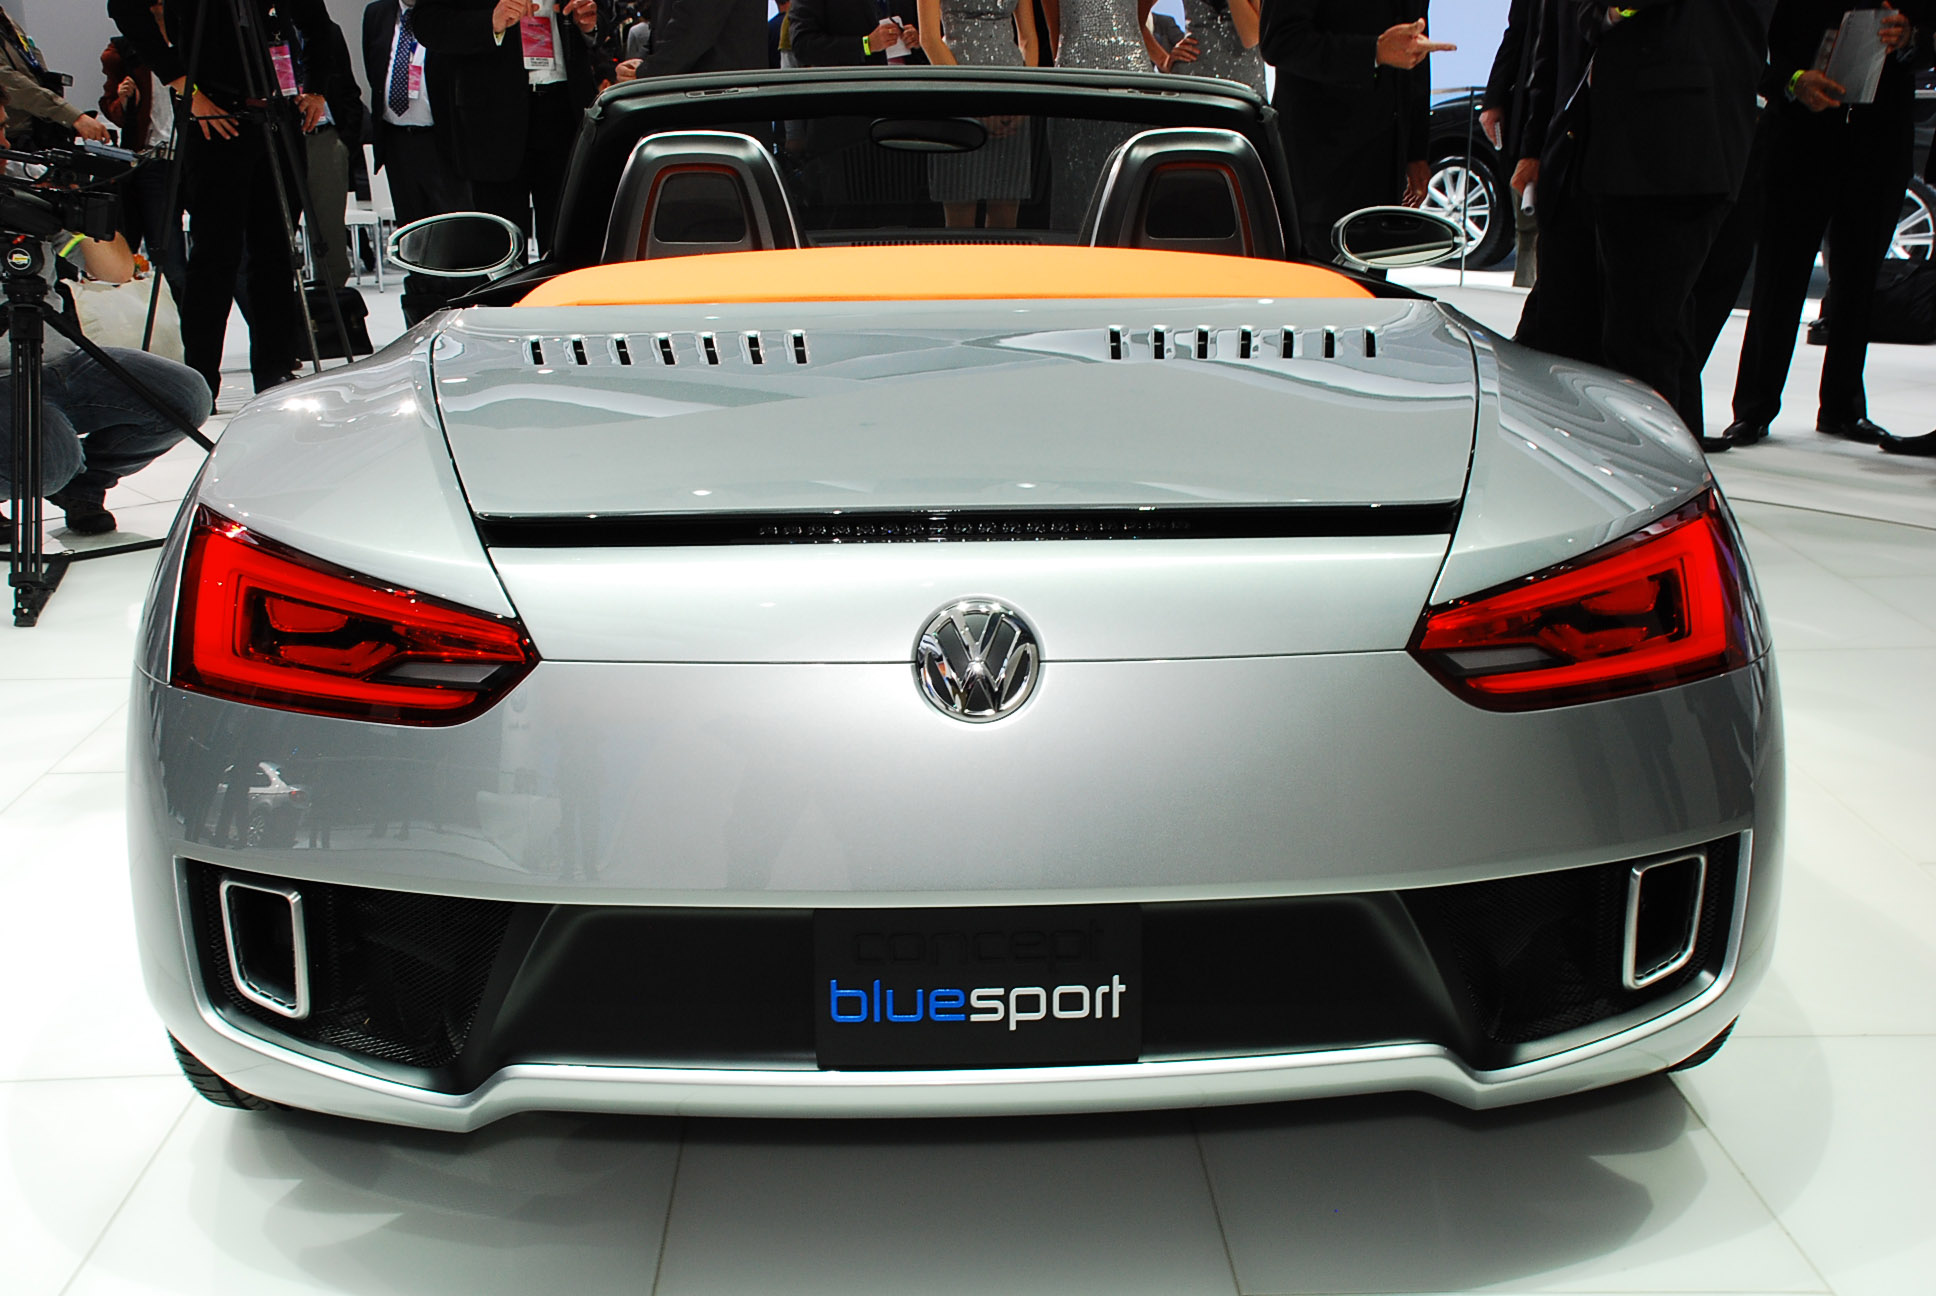 Volkswagen Concept BlueSport Detroit